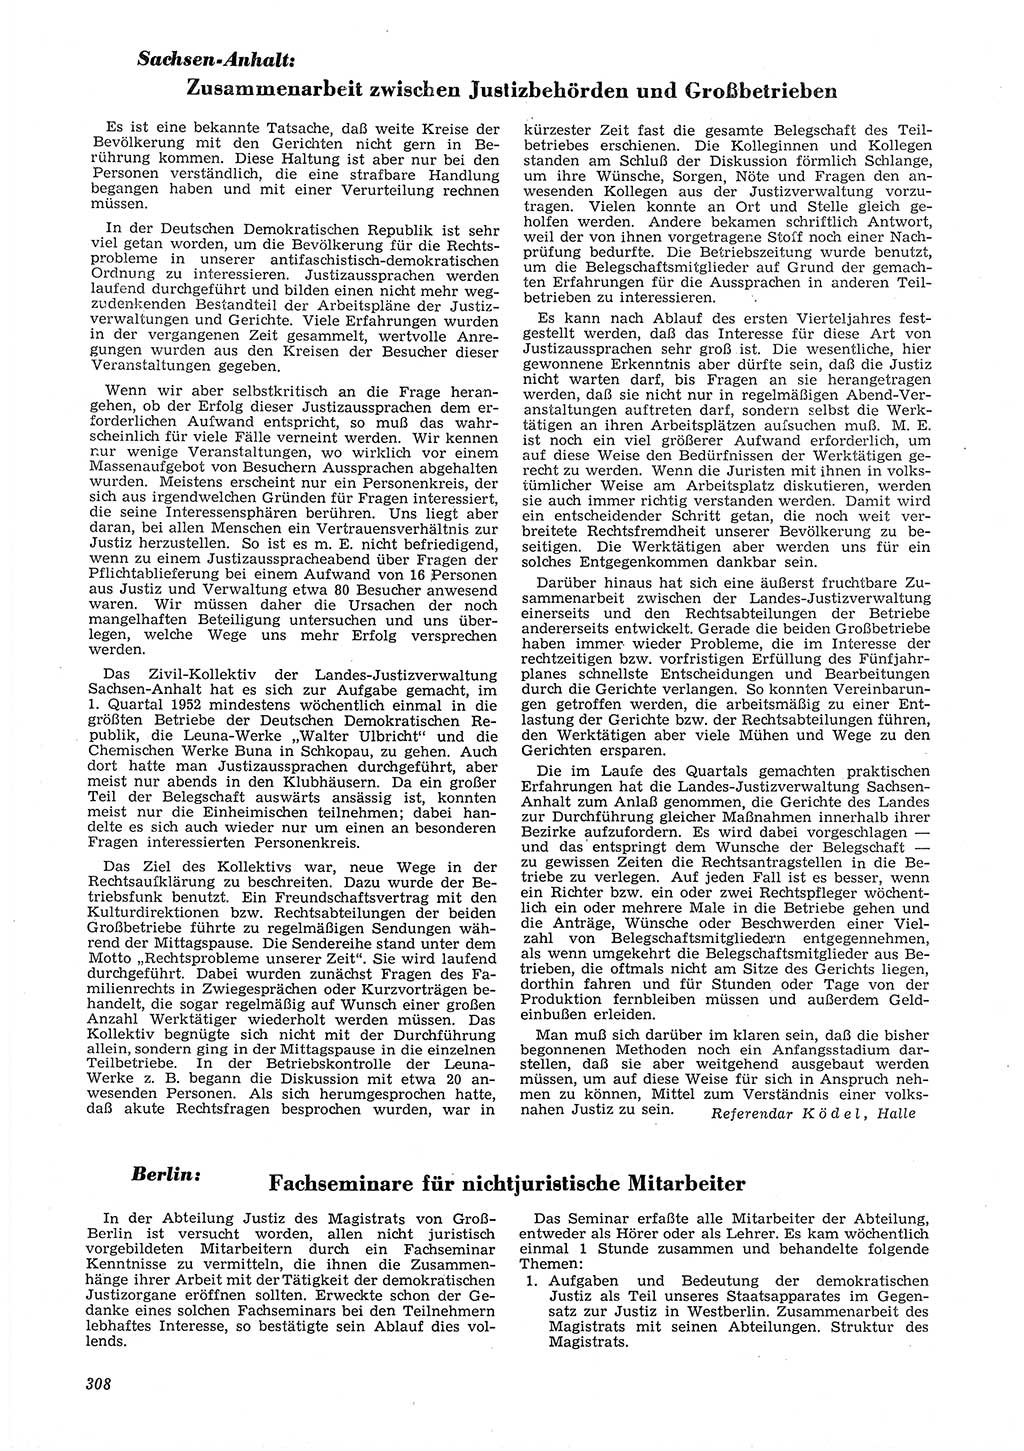 Neue Justiz (NJ), Zeitschrift für Recht und Rechtswissenschaft [Deutsche Demokratische Republik (DDR)], 6. Jahrgang 1952, Seite 308 (NJ DDR 1952, S. 308)